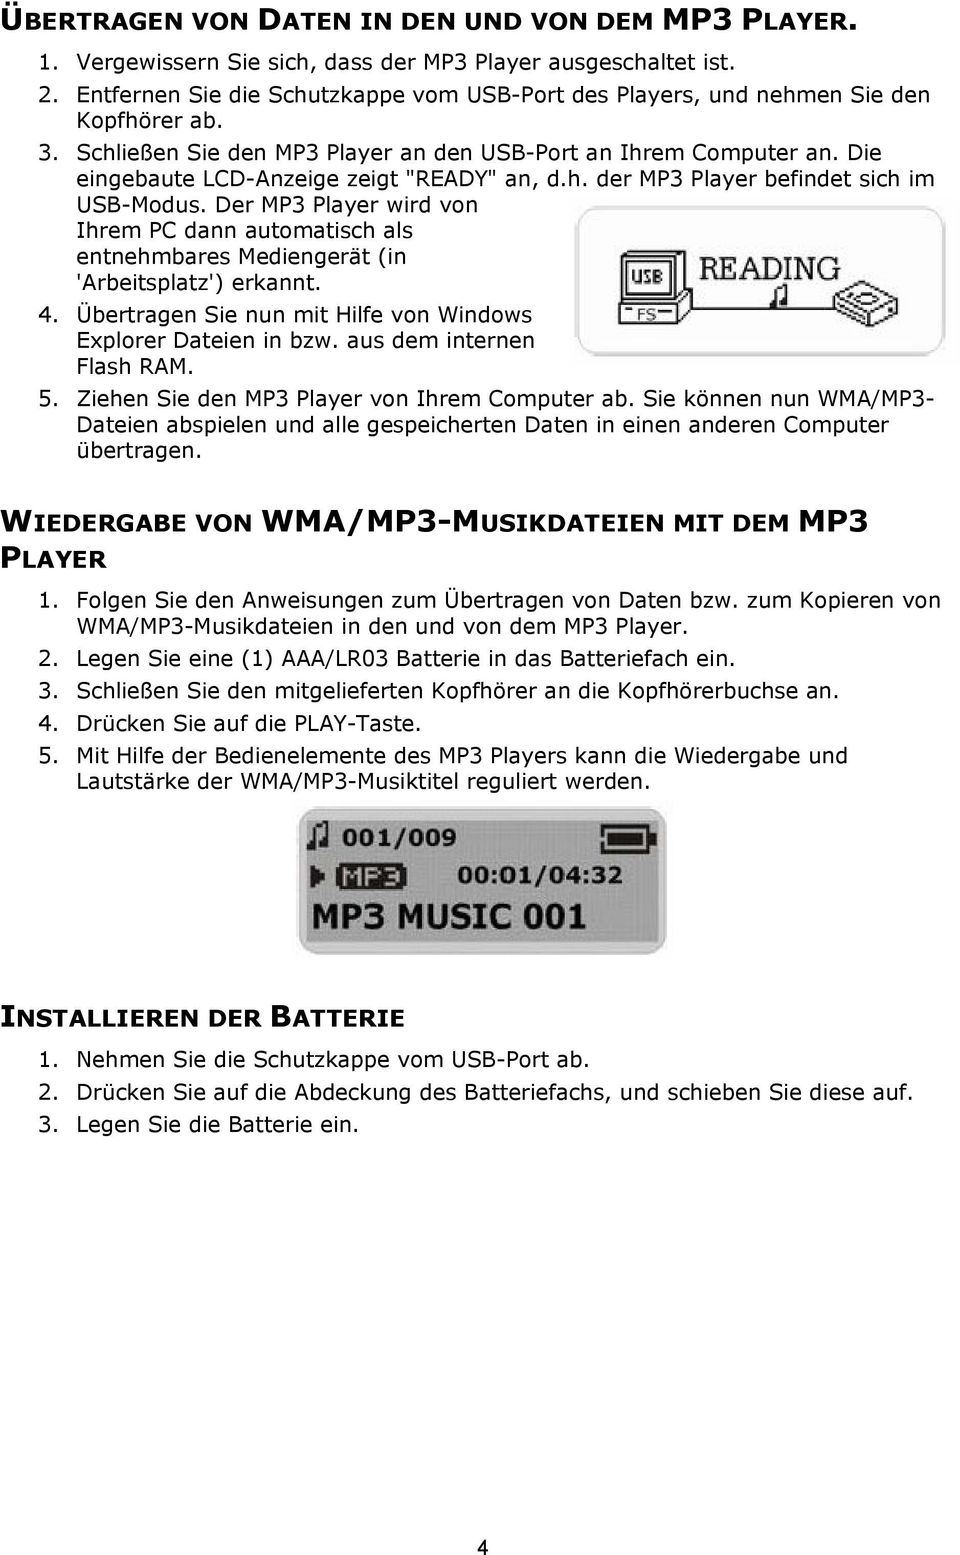 Die eingebaute LCD-Anzeige zeigt "READY" an, d.h. der MP3 Player befindet sich im USB-Modus. Der MP3 Player wird von Ihrem PC dann automatisch als entnehmbares Mediengerät (in 'Arbeitsplatz') erkannt.